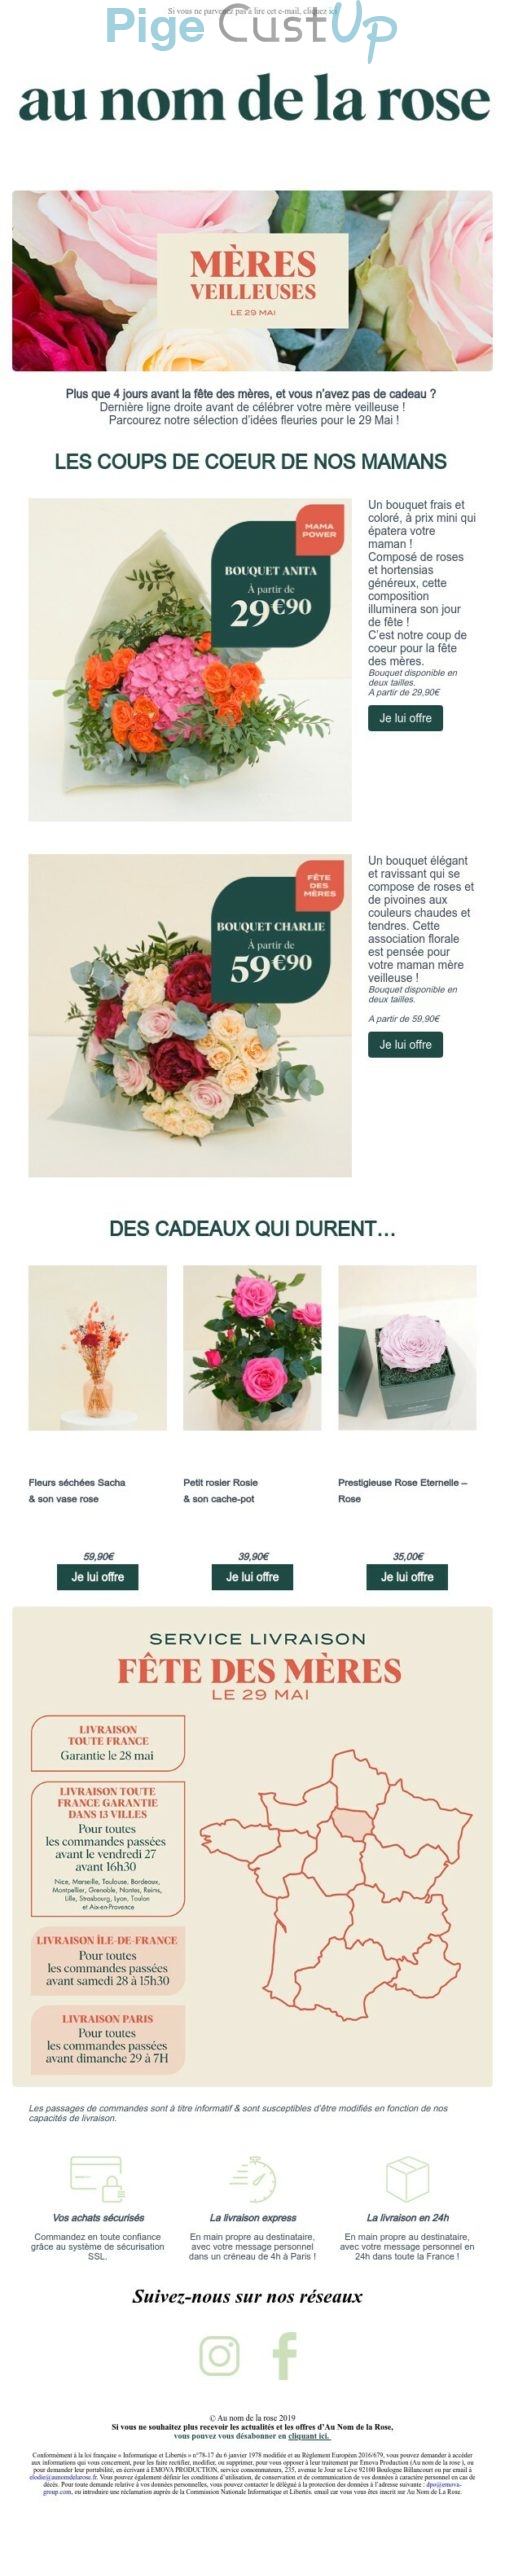 Exemple de Type de media  e-mailing - Au nom de la rose - Marketing relationnel - Calendaire (Noël, St valentin, Vœux, …)